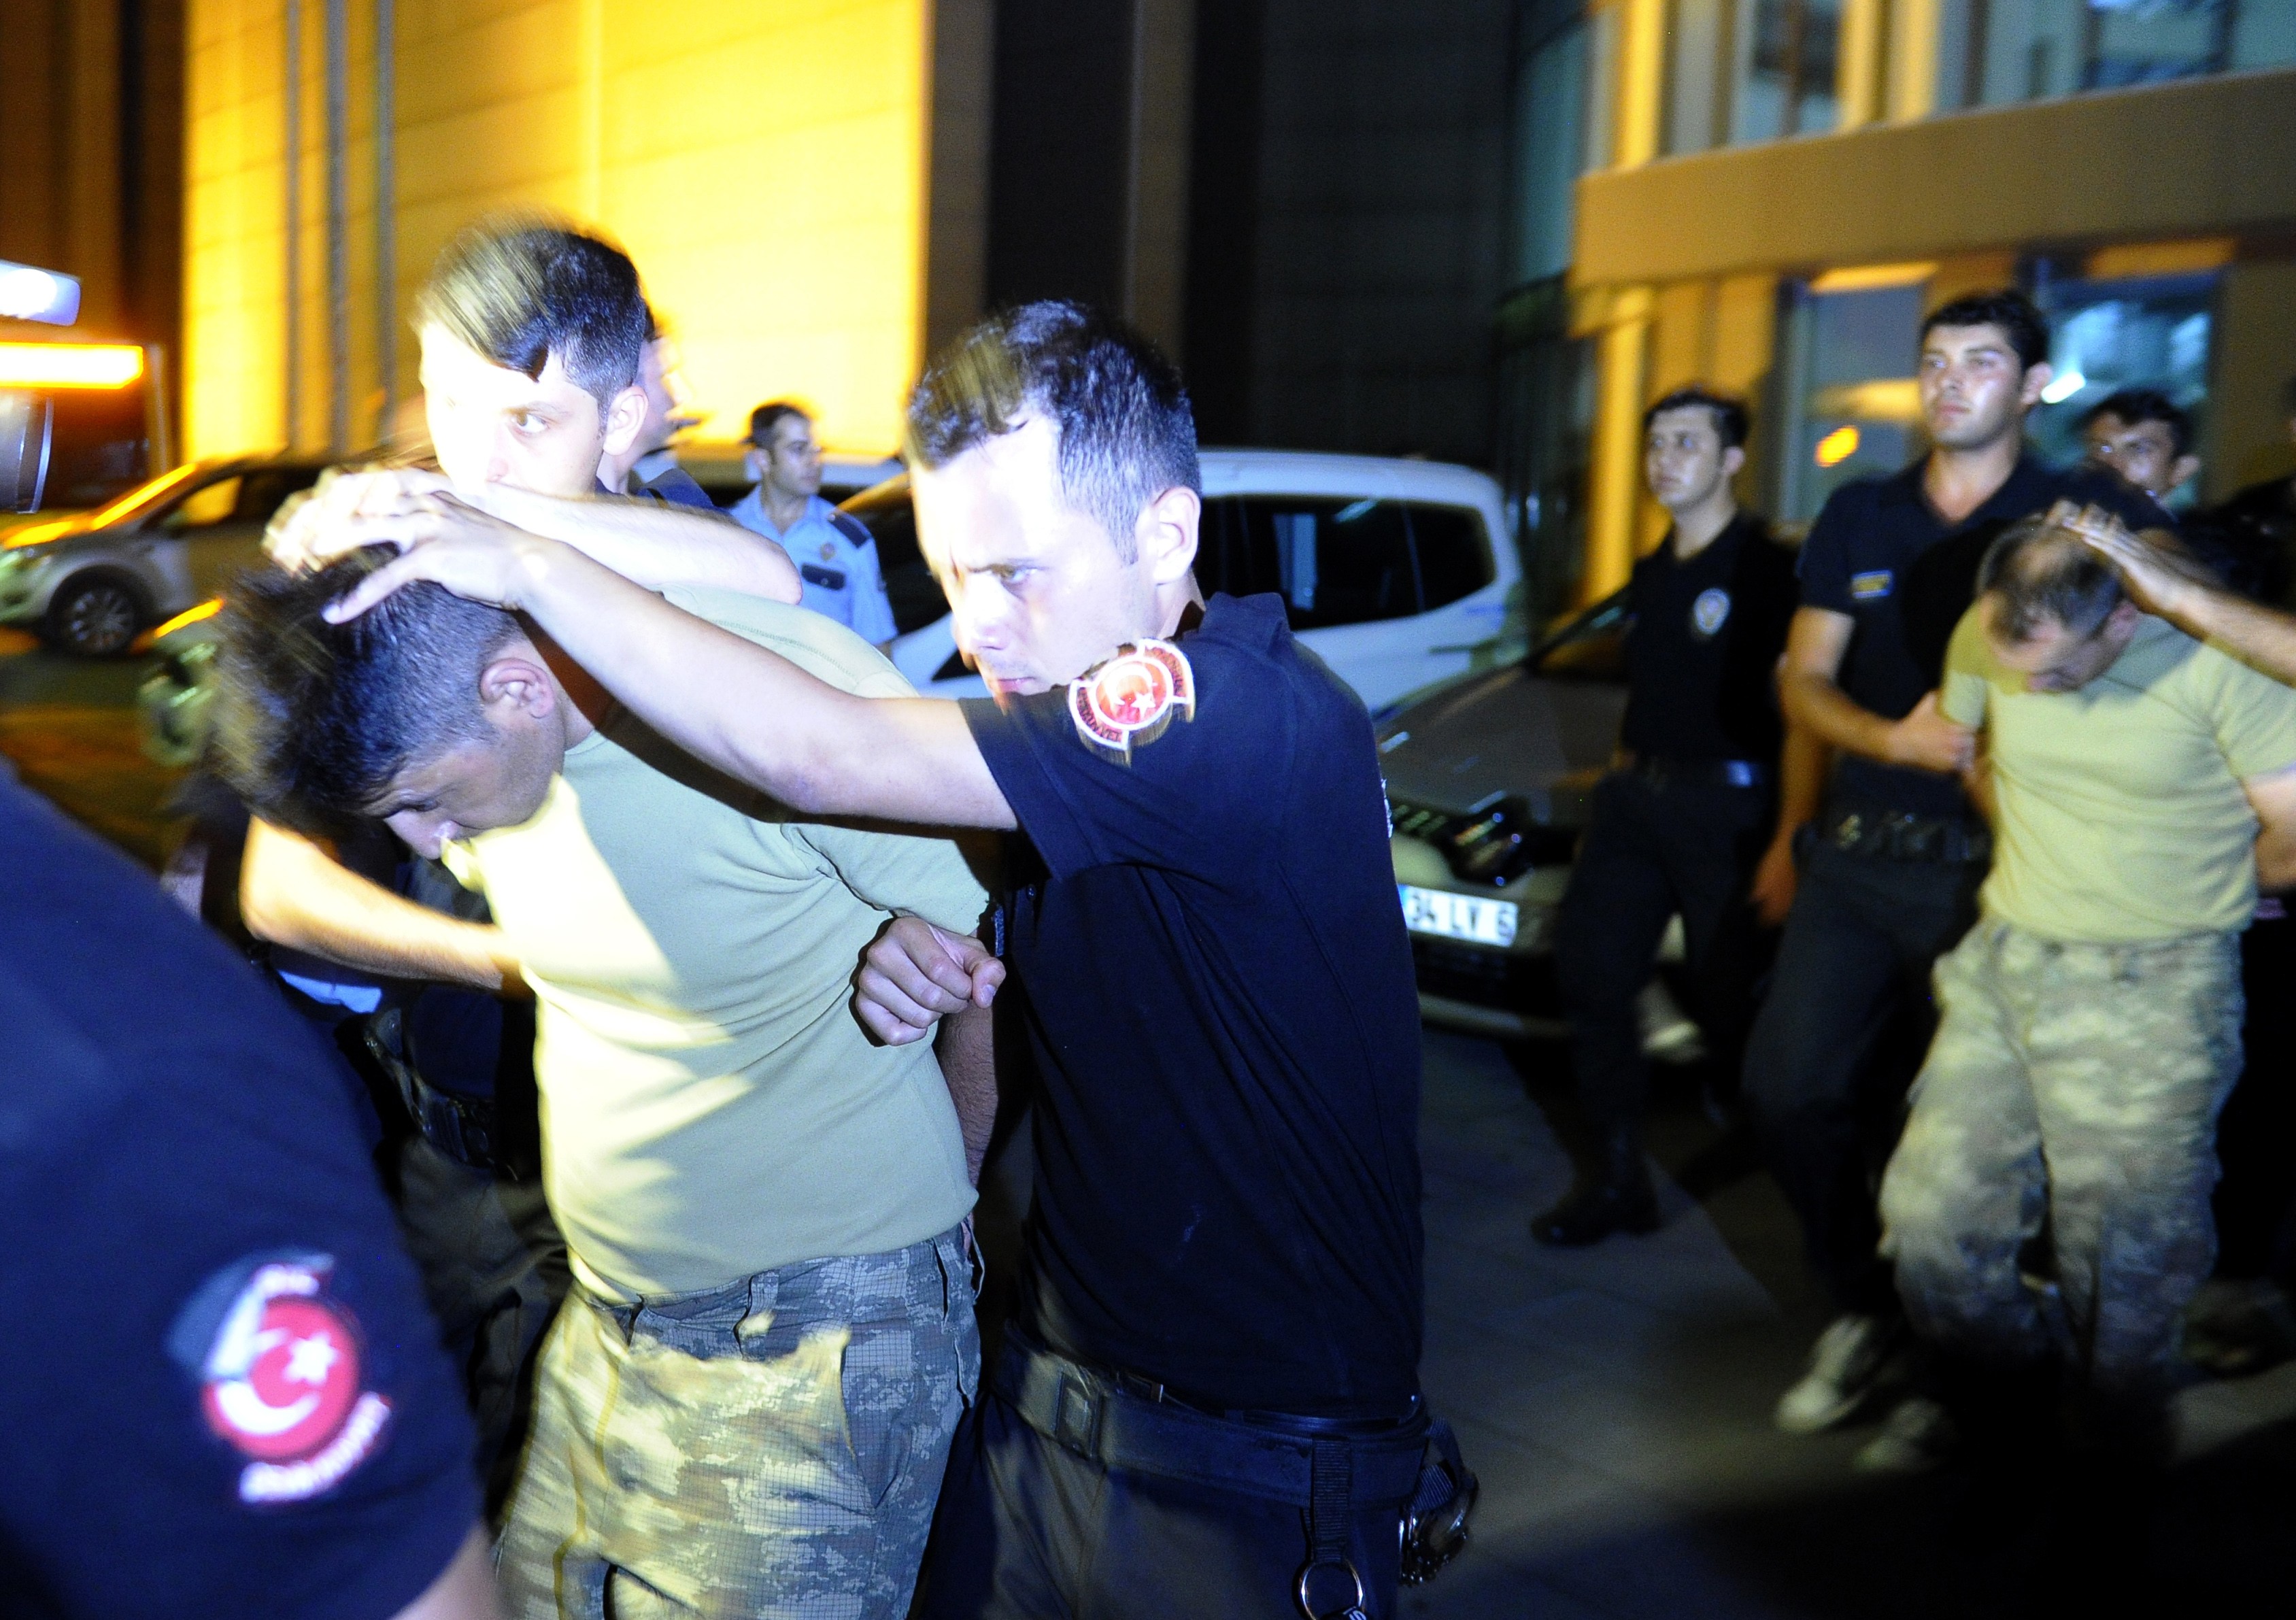 В аэропорту Ататюрк полиция задержала 45 солдат, участвовавших в попытке госпереворота.